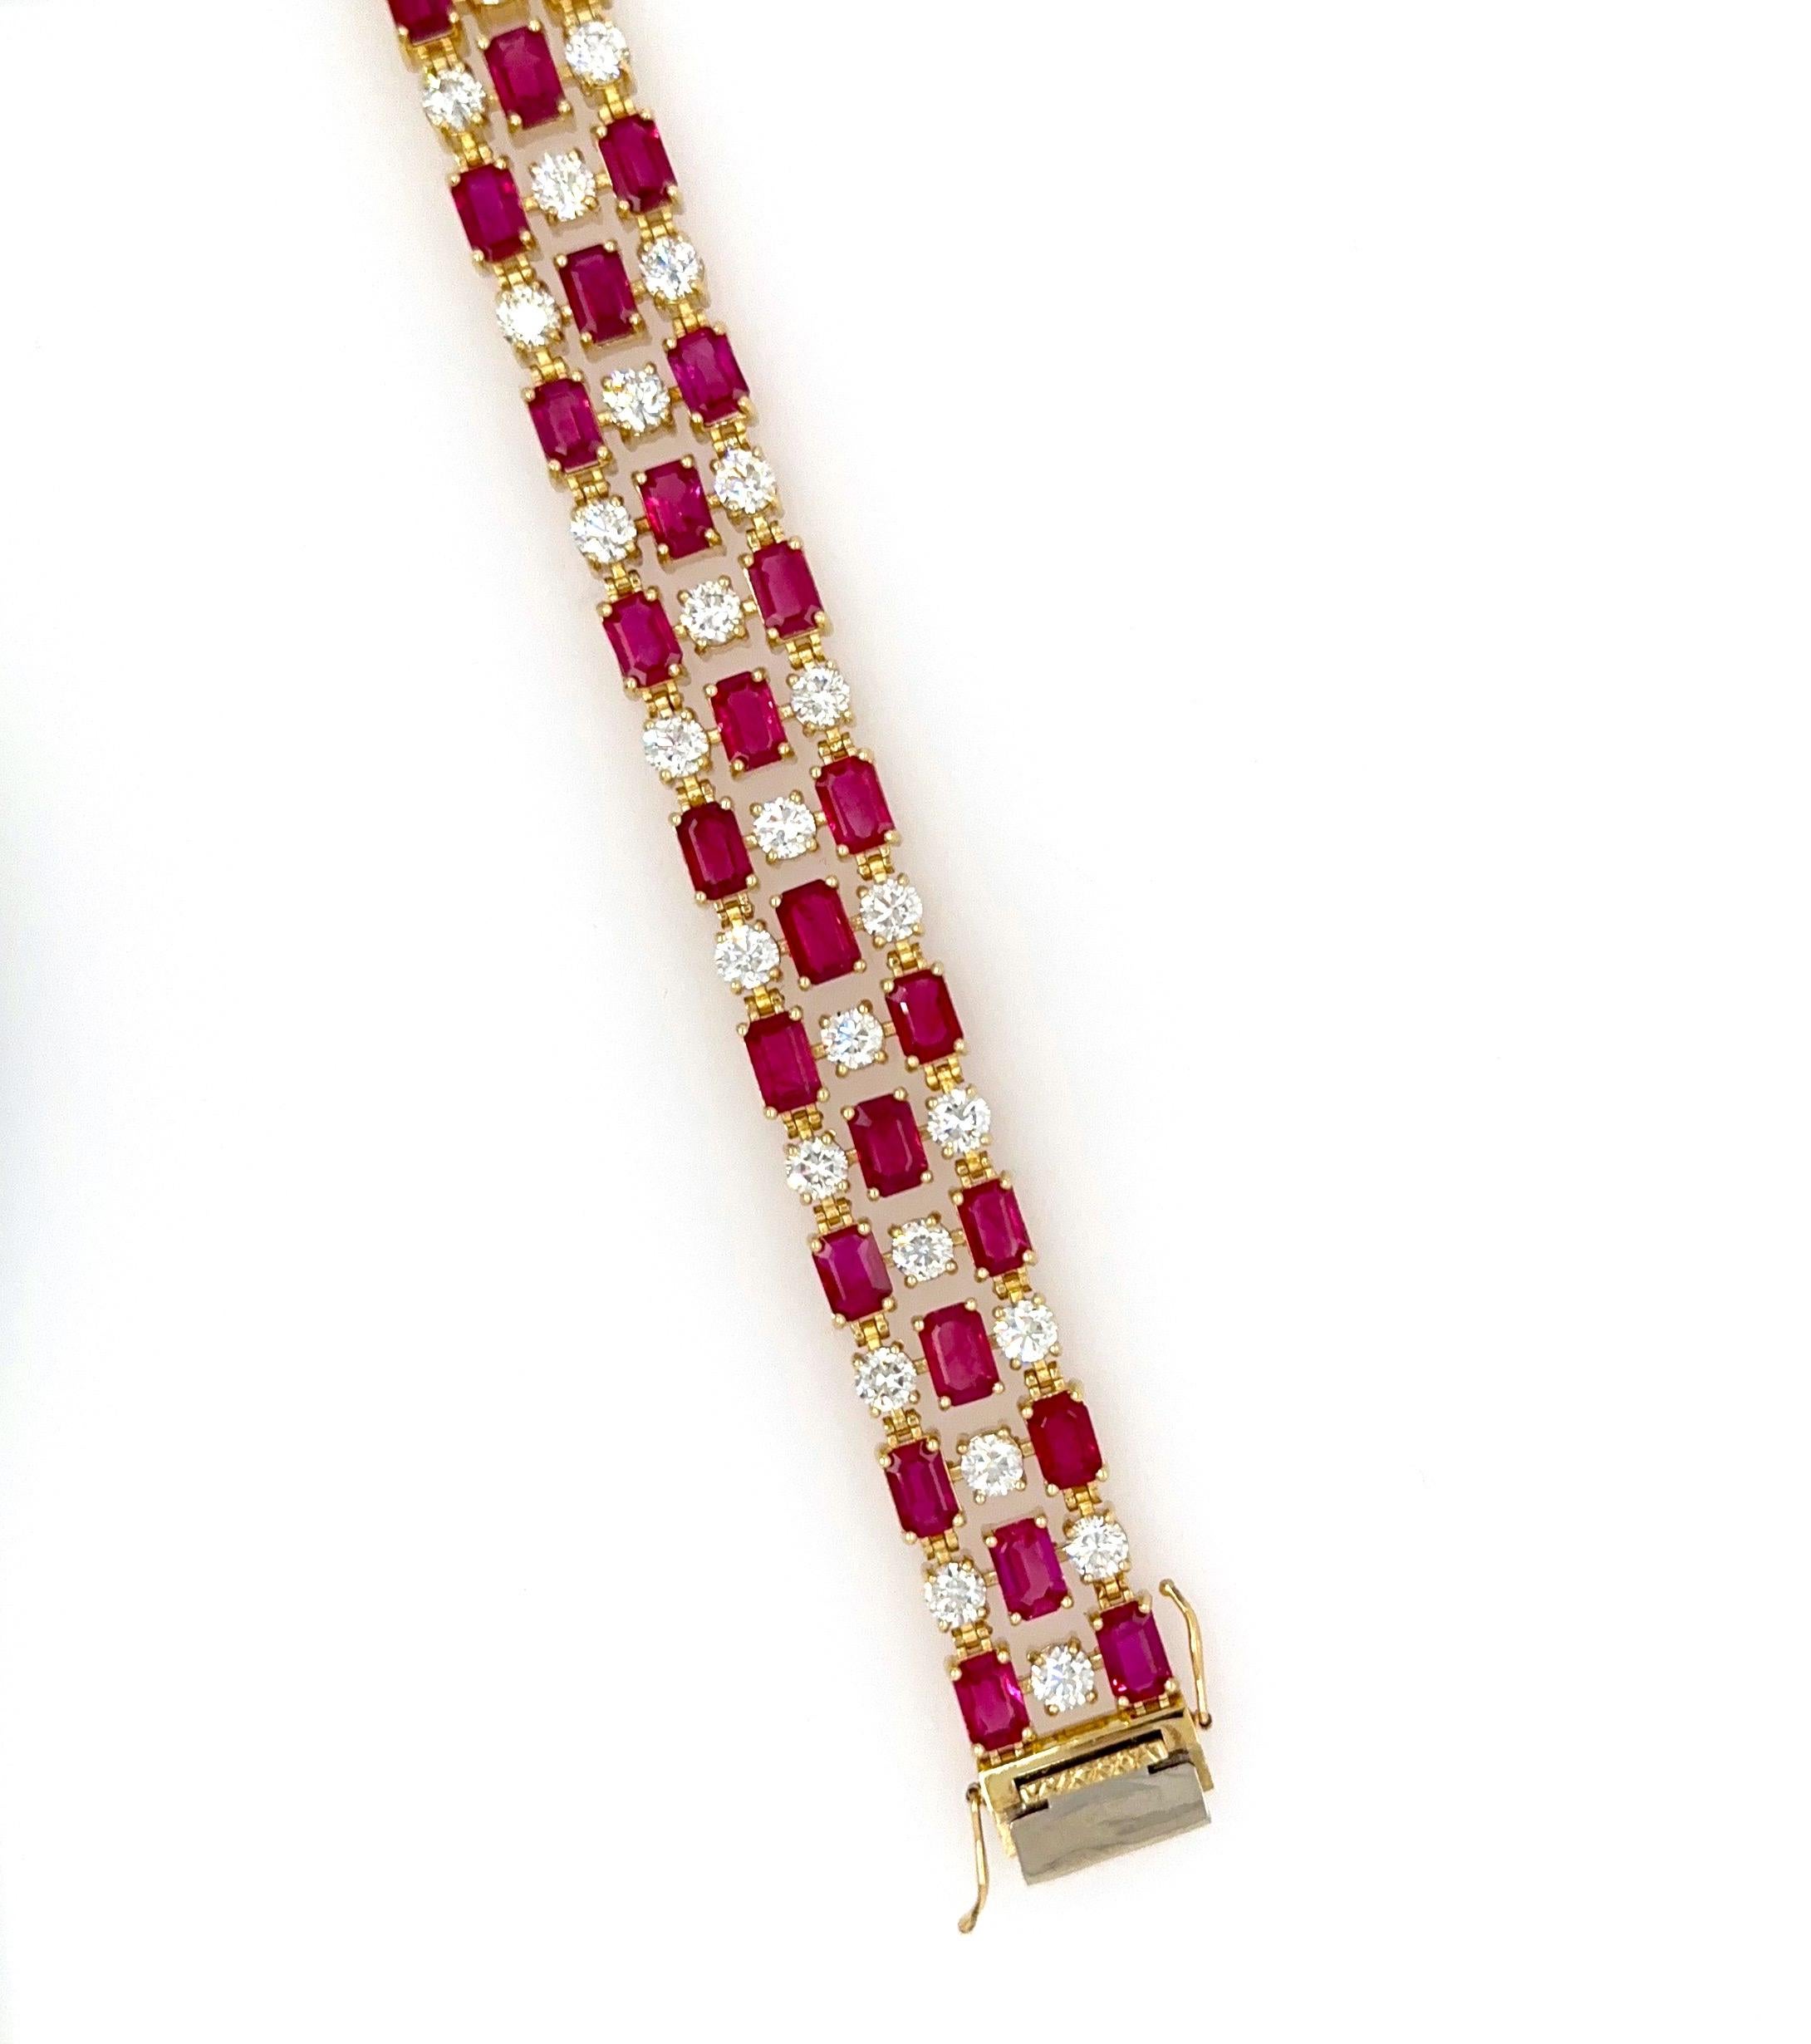 Einzigartiges Armband aus 18 Karat Gelbgold mit 19,68 ct burmesischen Rubinen im Smaragdschliff und 8,04 ct natürlichen weißen Diamanten.
Dieses schöne Armband ist ein 3-reihiges brandneues 7